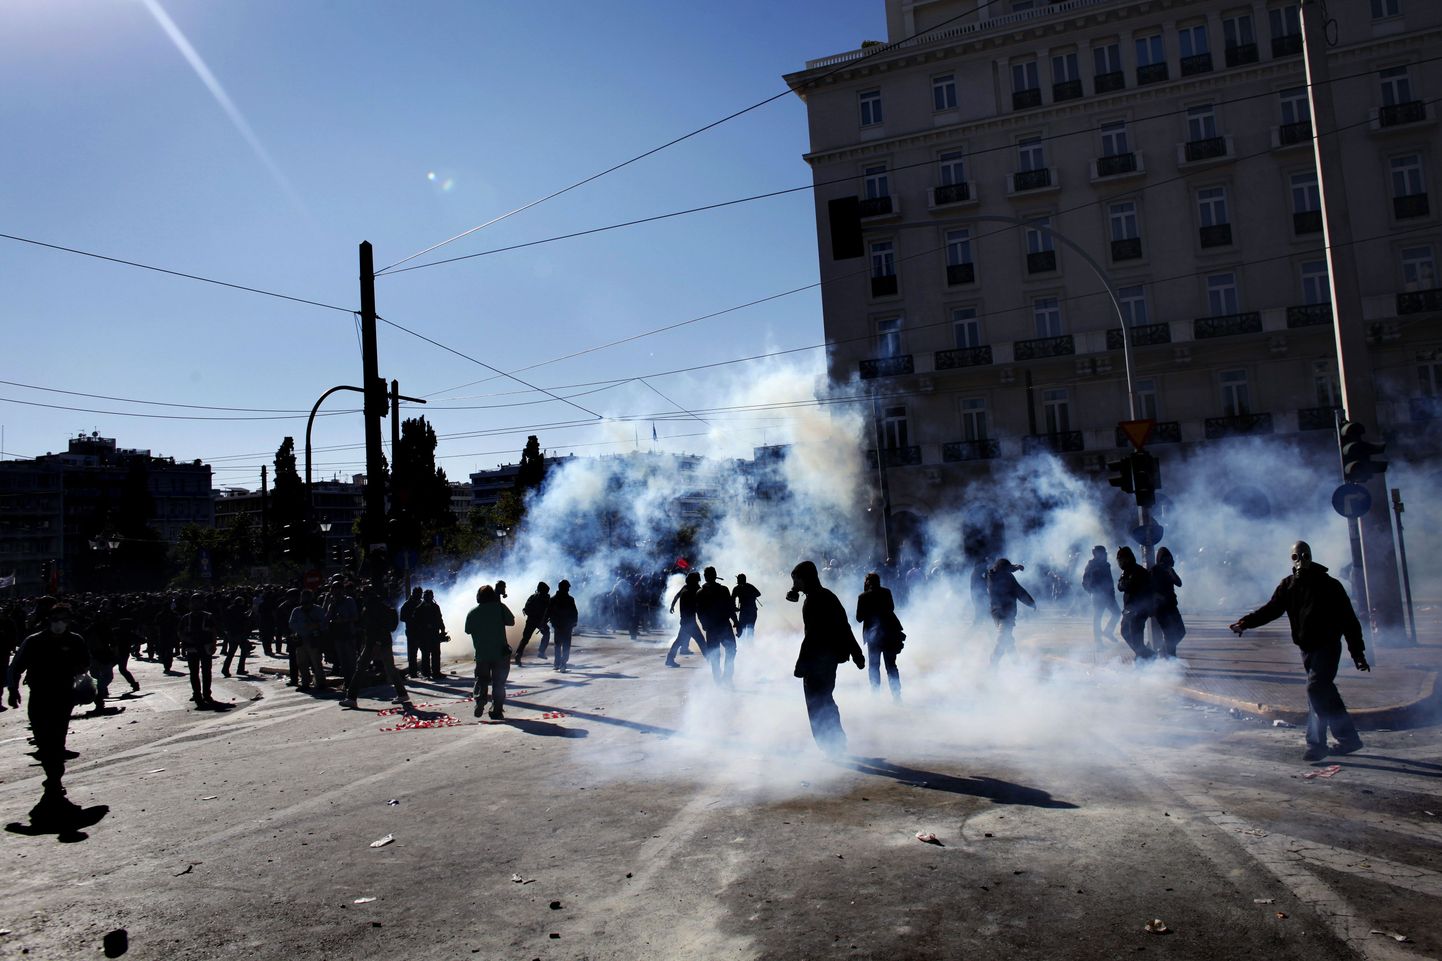 Kreeka ametiühingud alustasid kärpekavade vastast 48-tunnist streiki. Meeleavaldused muutusid vägivaldseteks ja vandaalitsevateks.